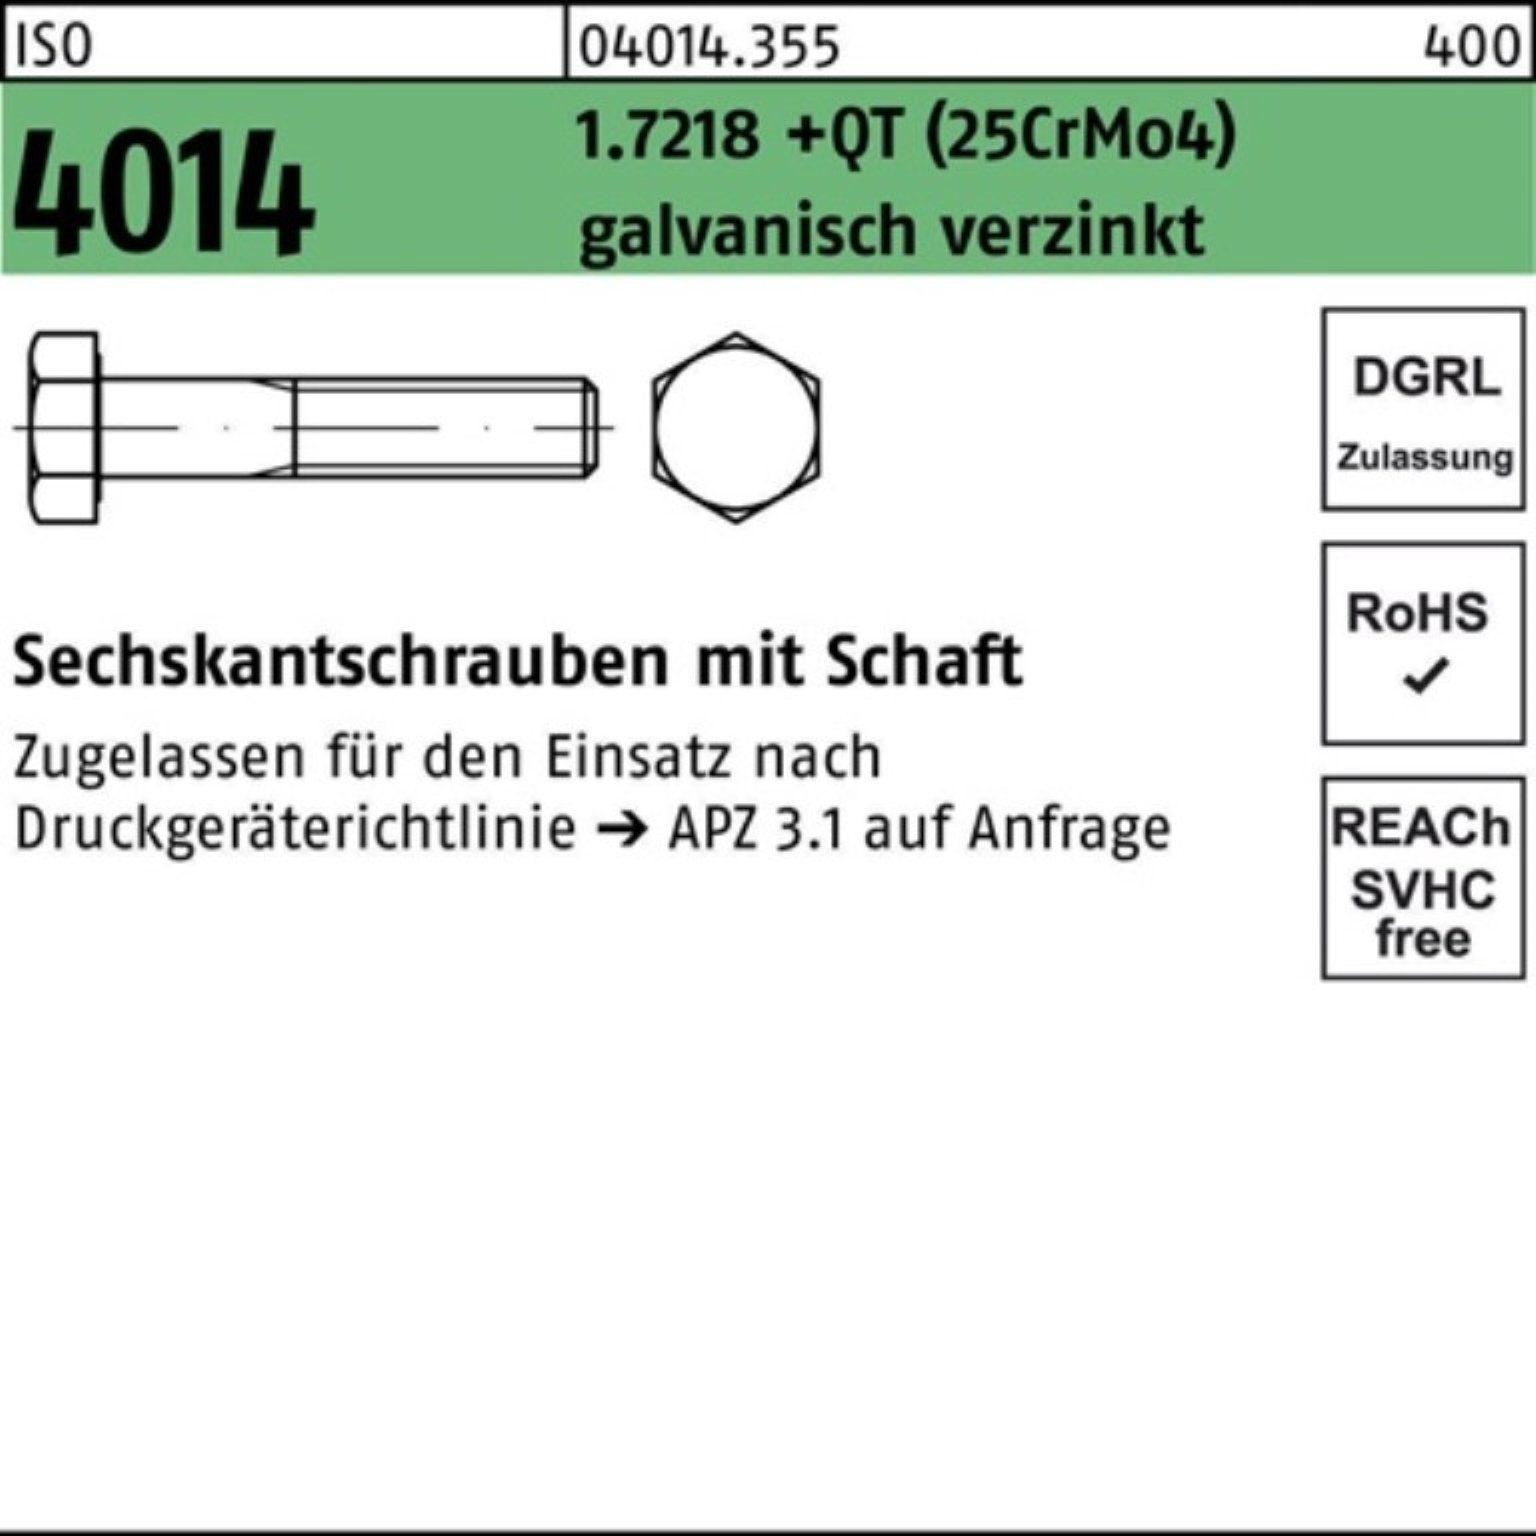 (25CrM M30x250 Bufab Schaft 1.7218 +QT ISO Sechskantschraube Pack 4014 Sechskantschraube 100er